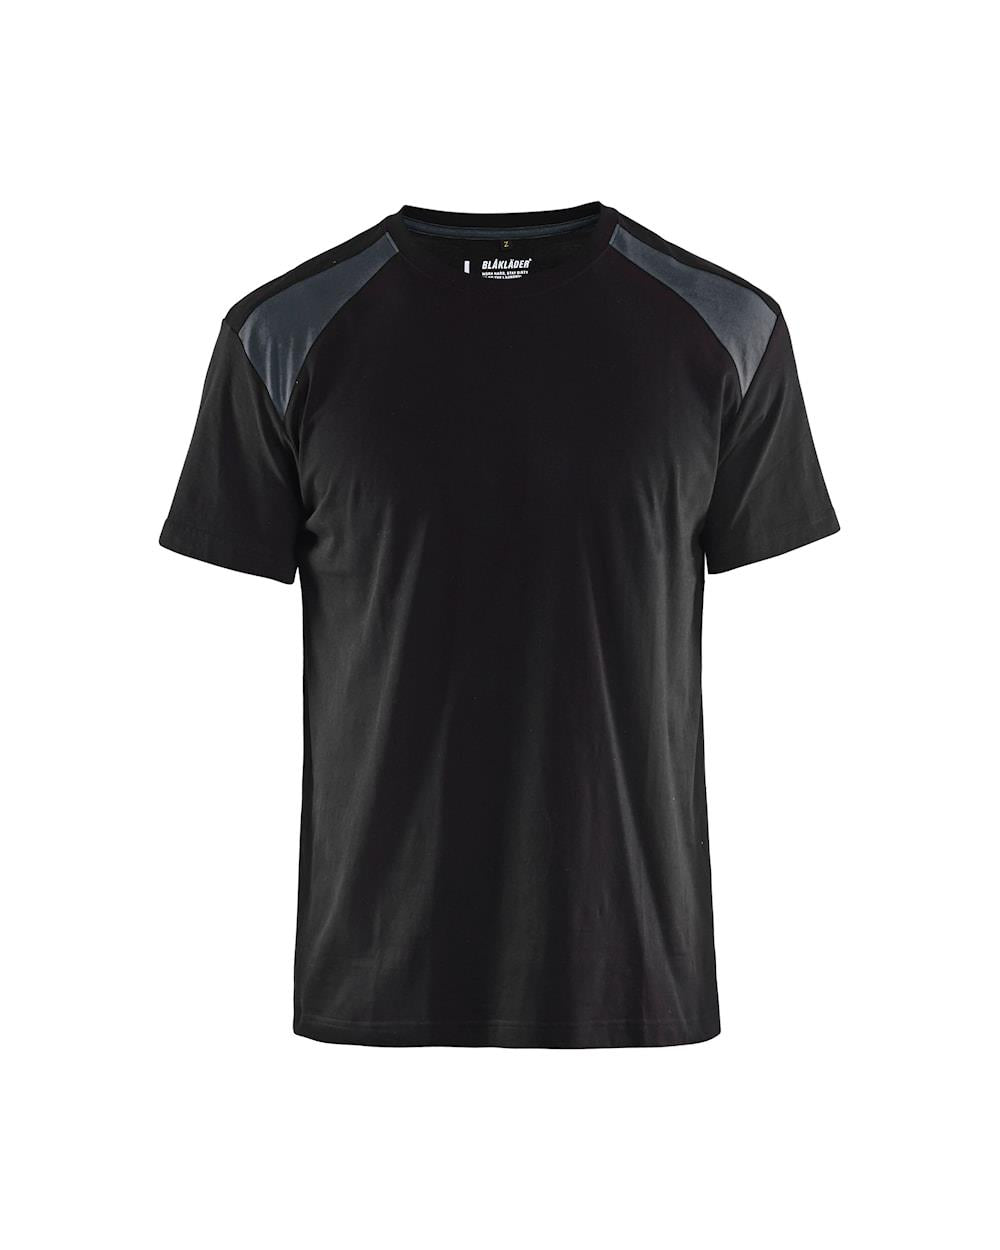 Blaklader black/dark grey men's cotton short-sleeve work T-shirt #3379